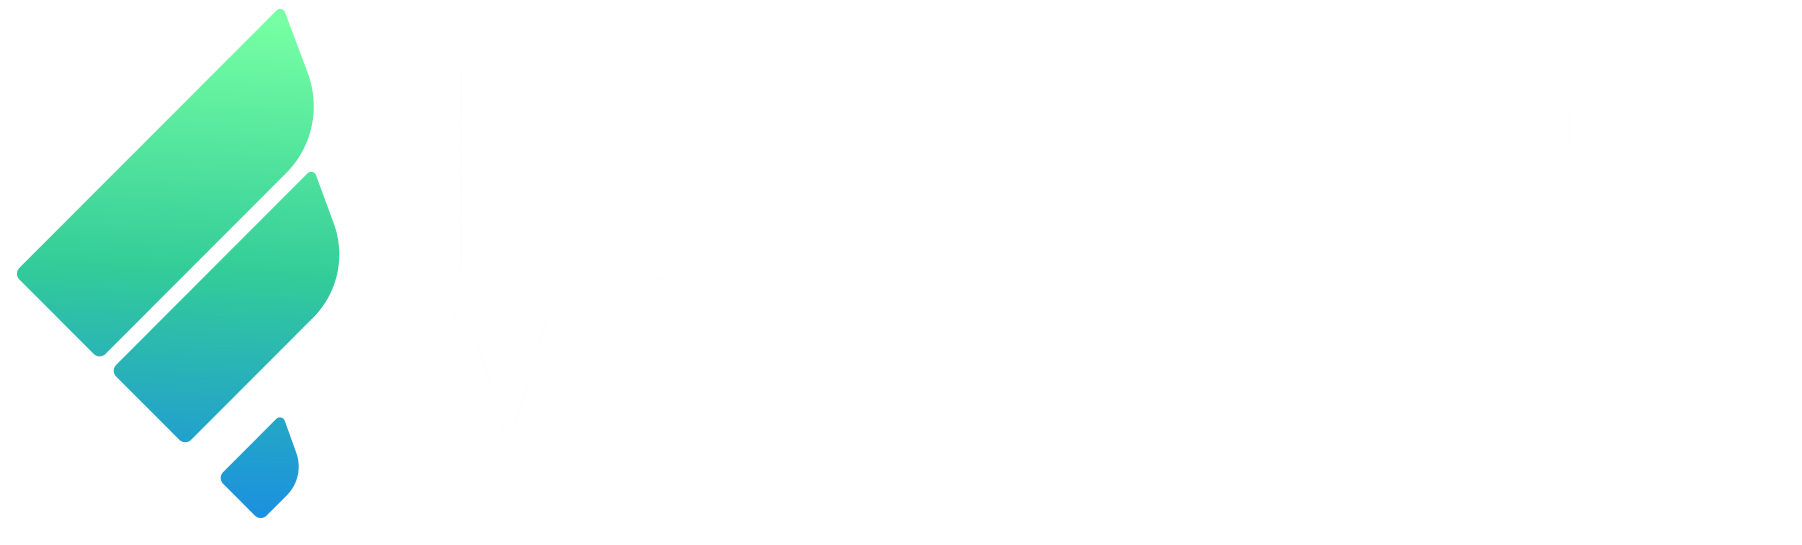 Fomocraft Ventures